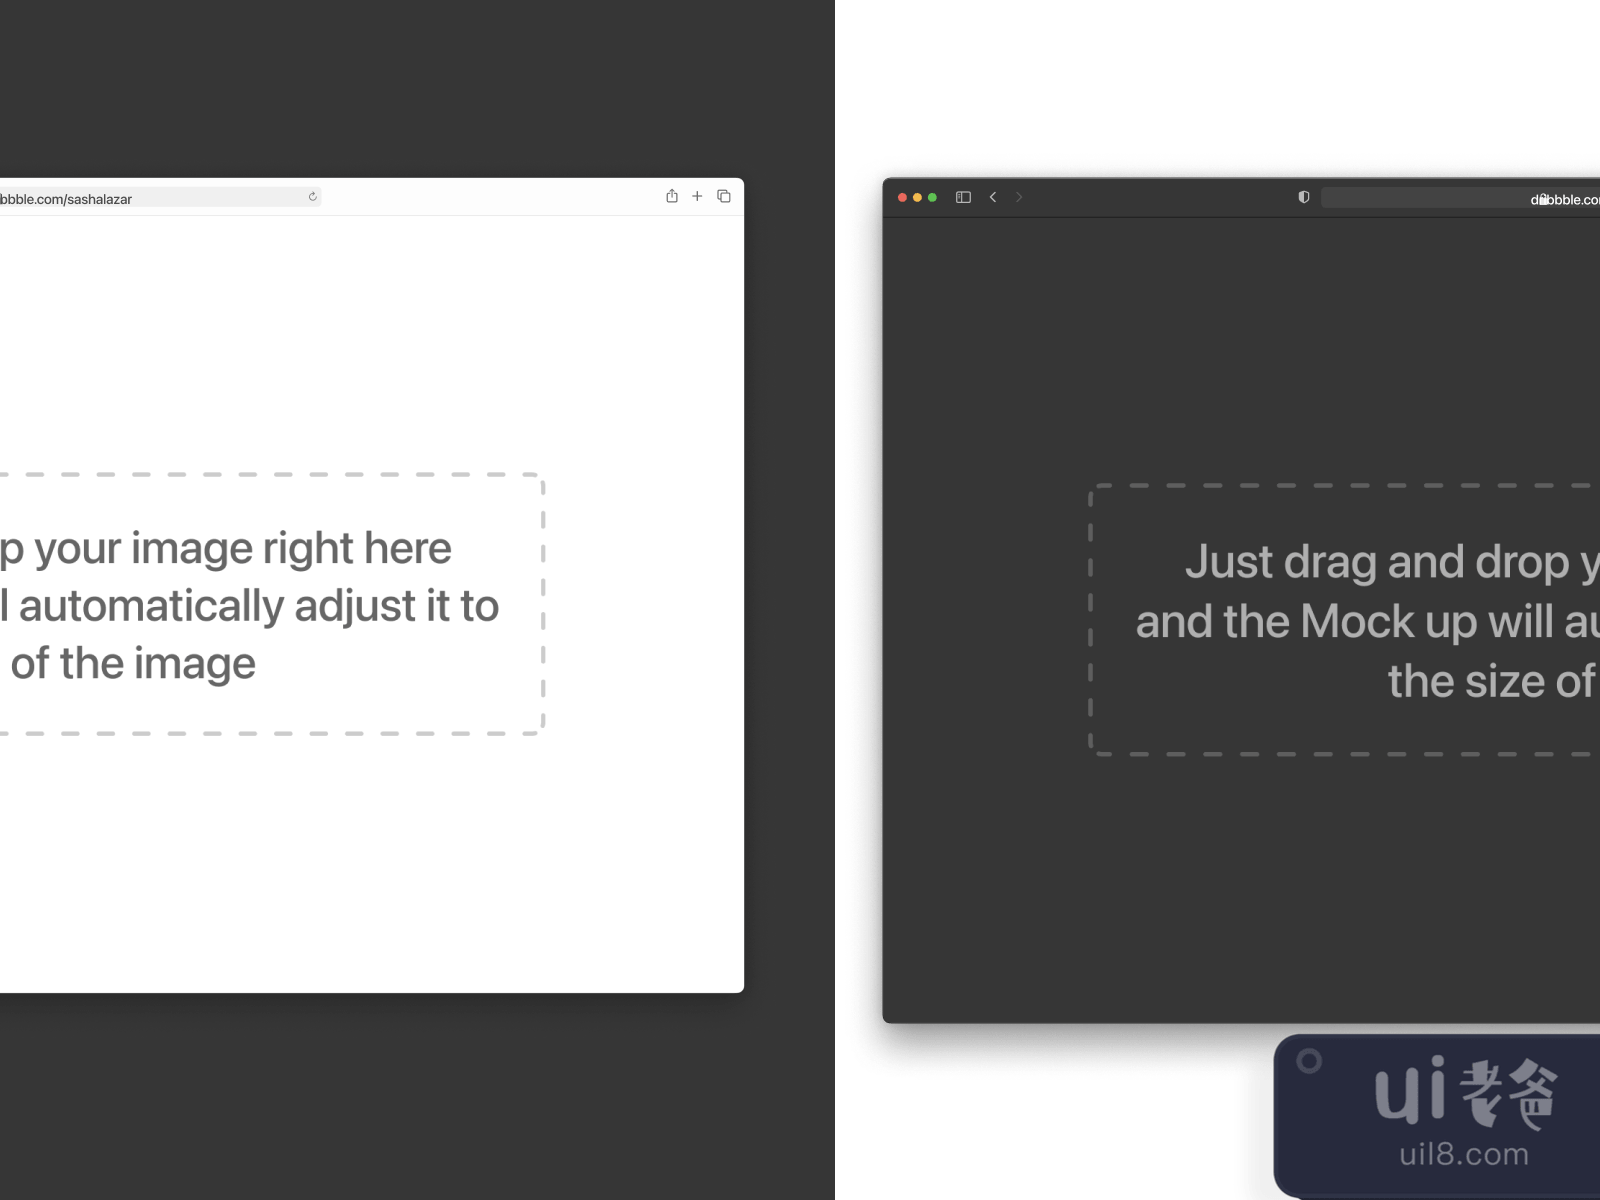 macOS Big Sur Safari UI Kit for Figma and Adobe XD No 3